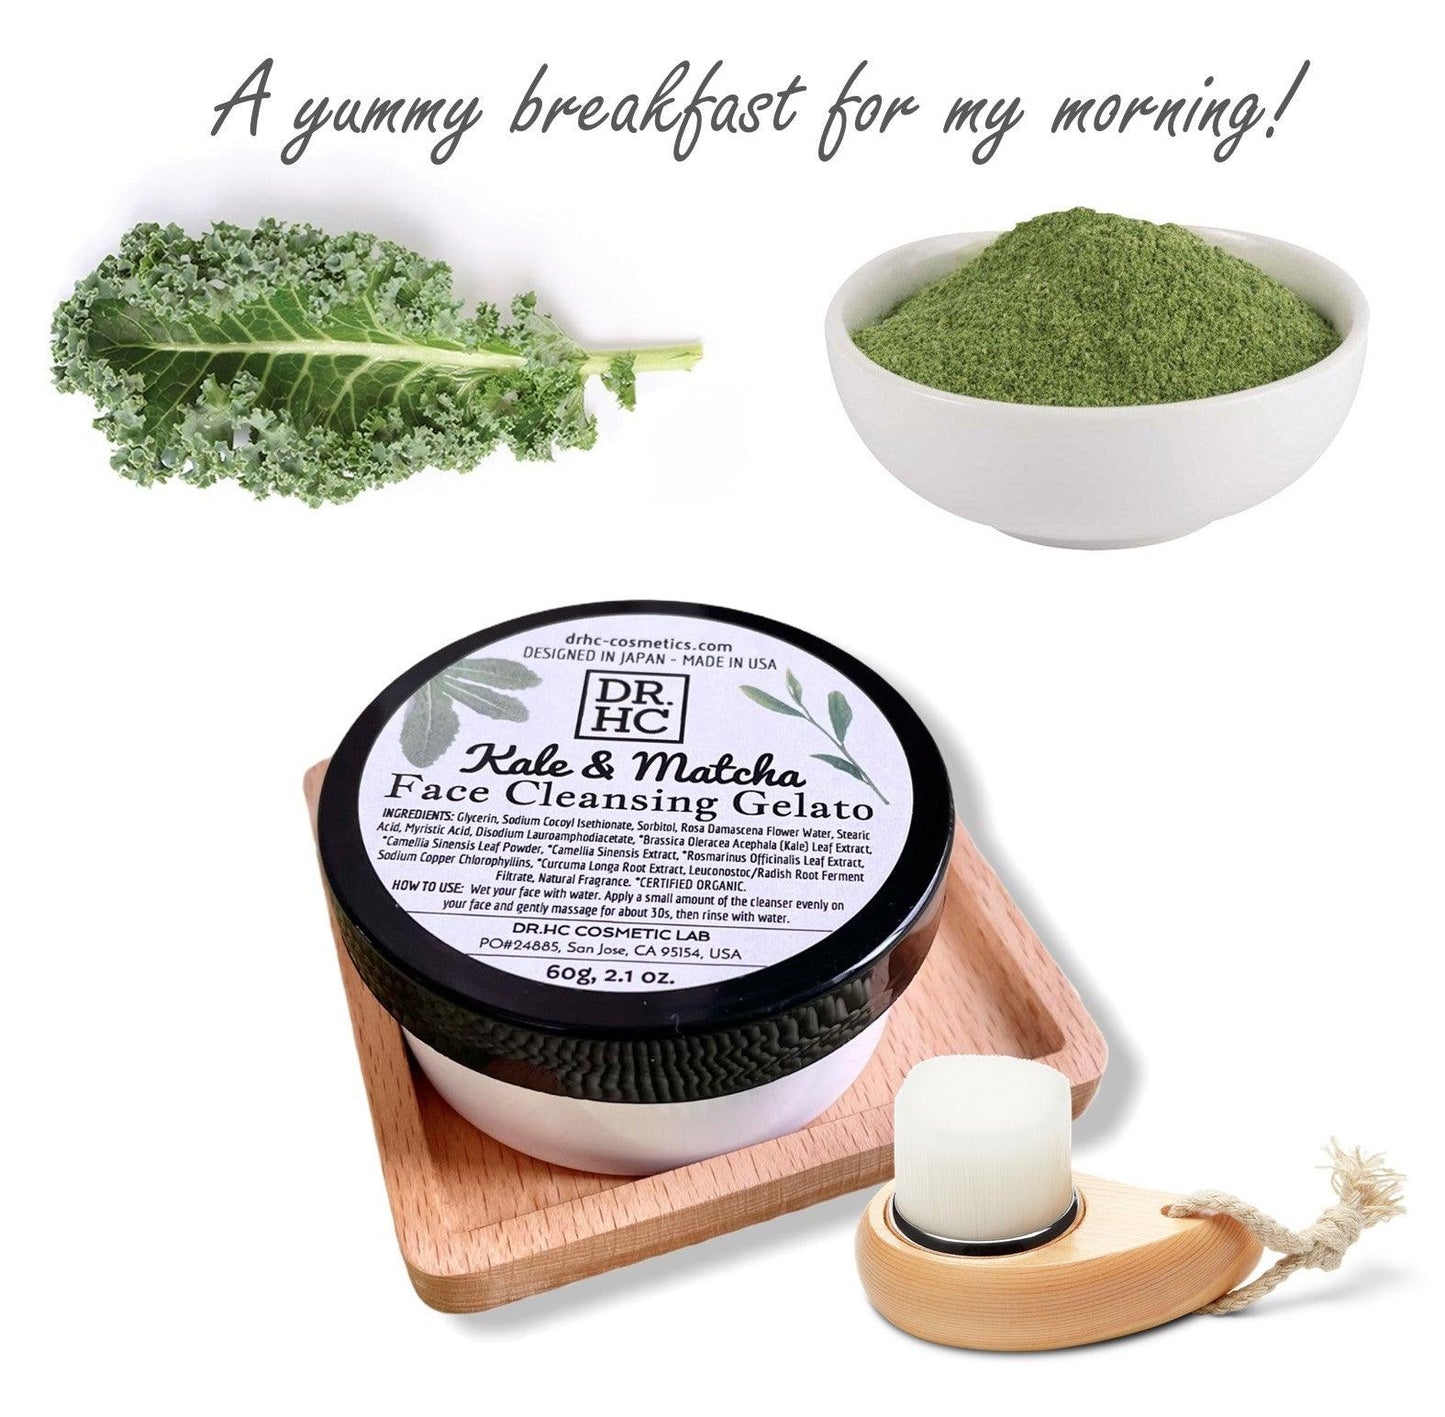 DR.HC Kale & Matcha - Face Cleansing Gelato (60g, 2oz) (Skin brightening, Anti-aging, Anti-inflammatory, Anti-acne...)-3